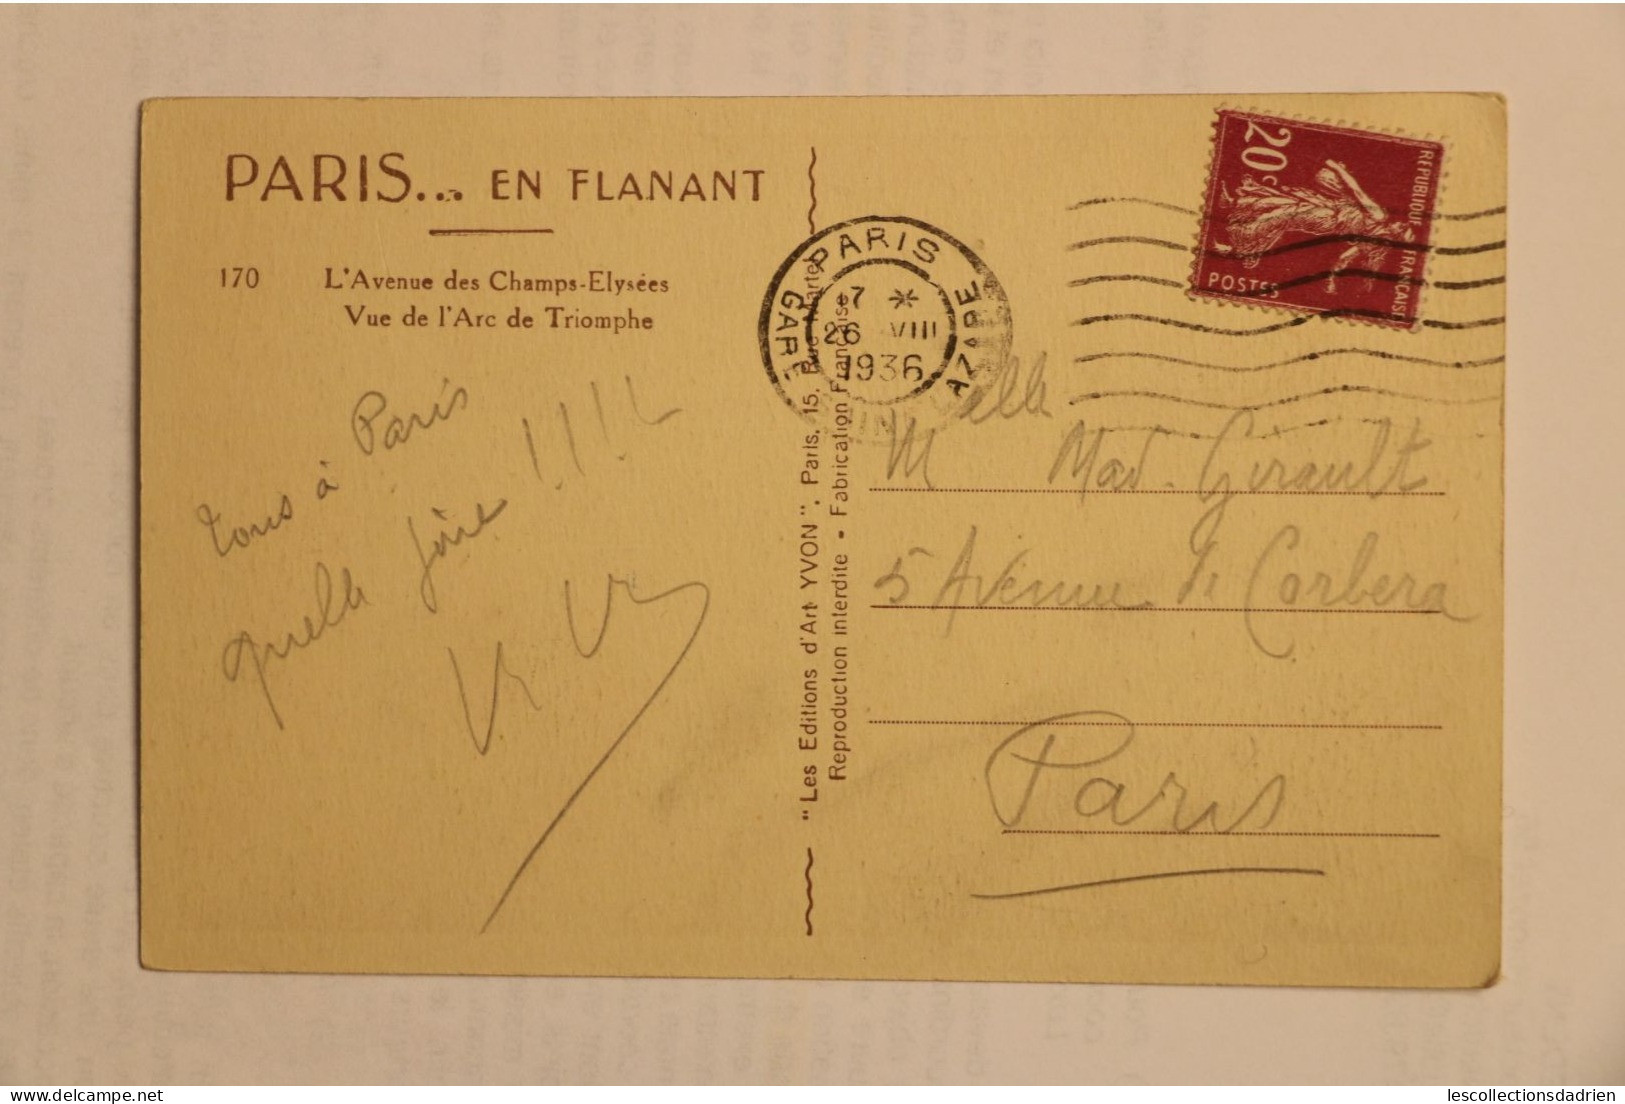 Carte postale ancienne - Paris -  Paris en flanant - champs Elysées arc du Triomphe  1936- gare St Lazare oblitération